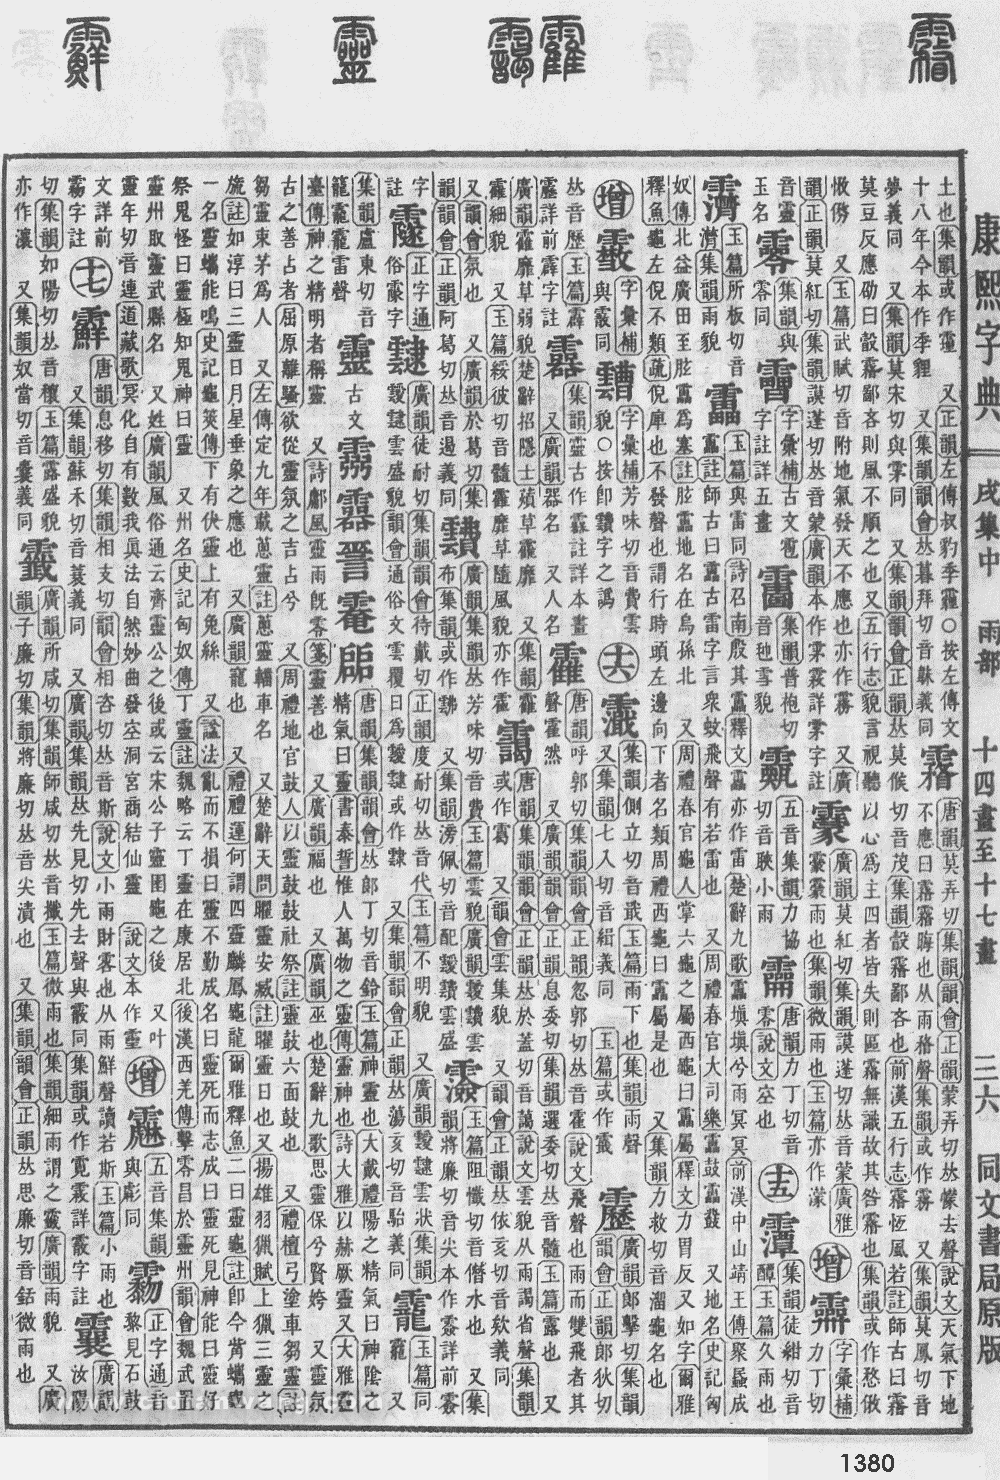 康熙字典掃描版第1380頁